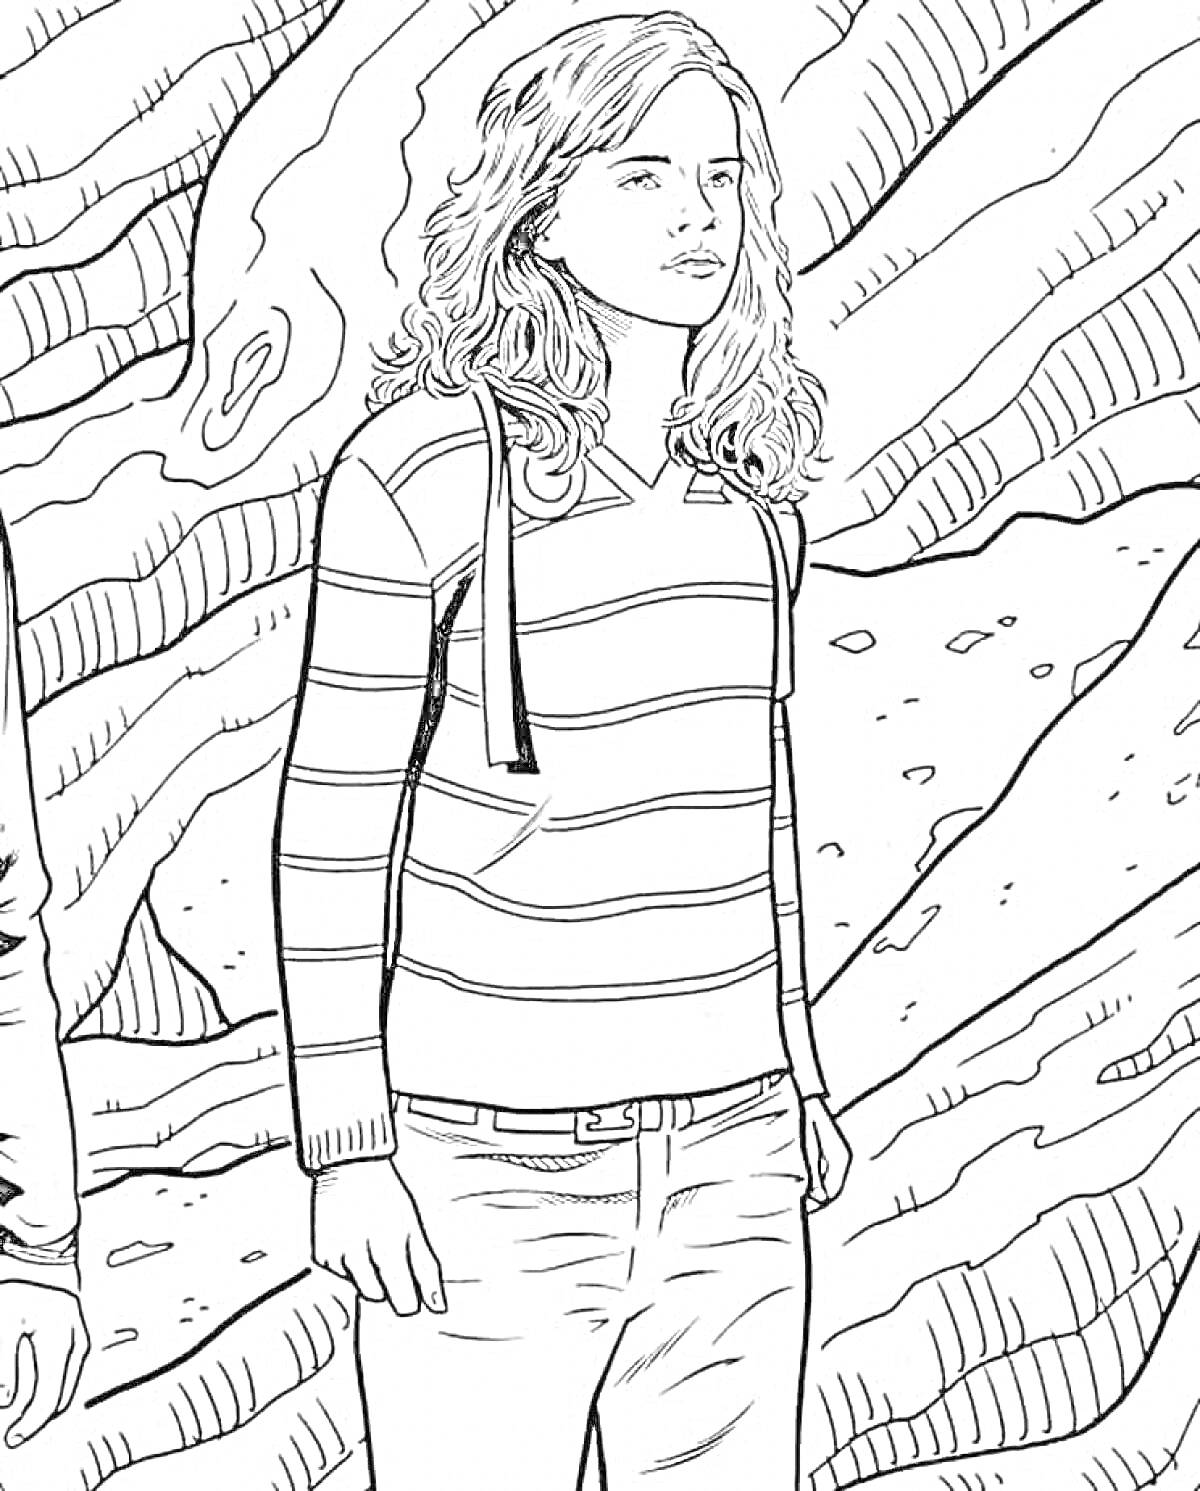 Девушка с длинными волосами, в полосатом свитере, на фоне скал и деревьев